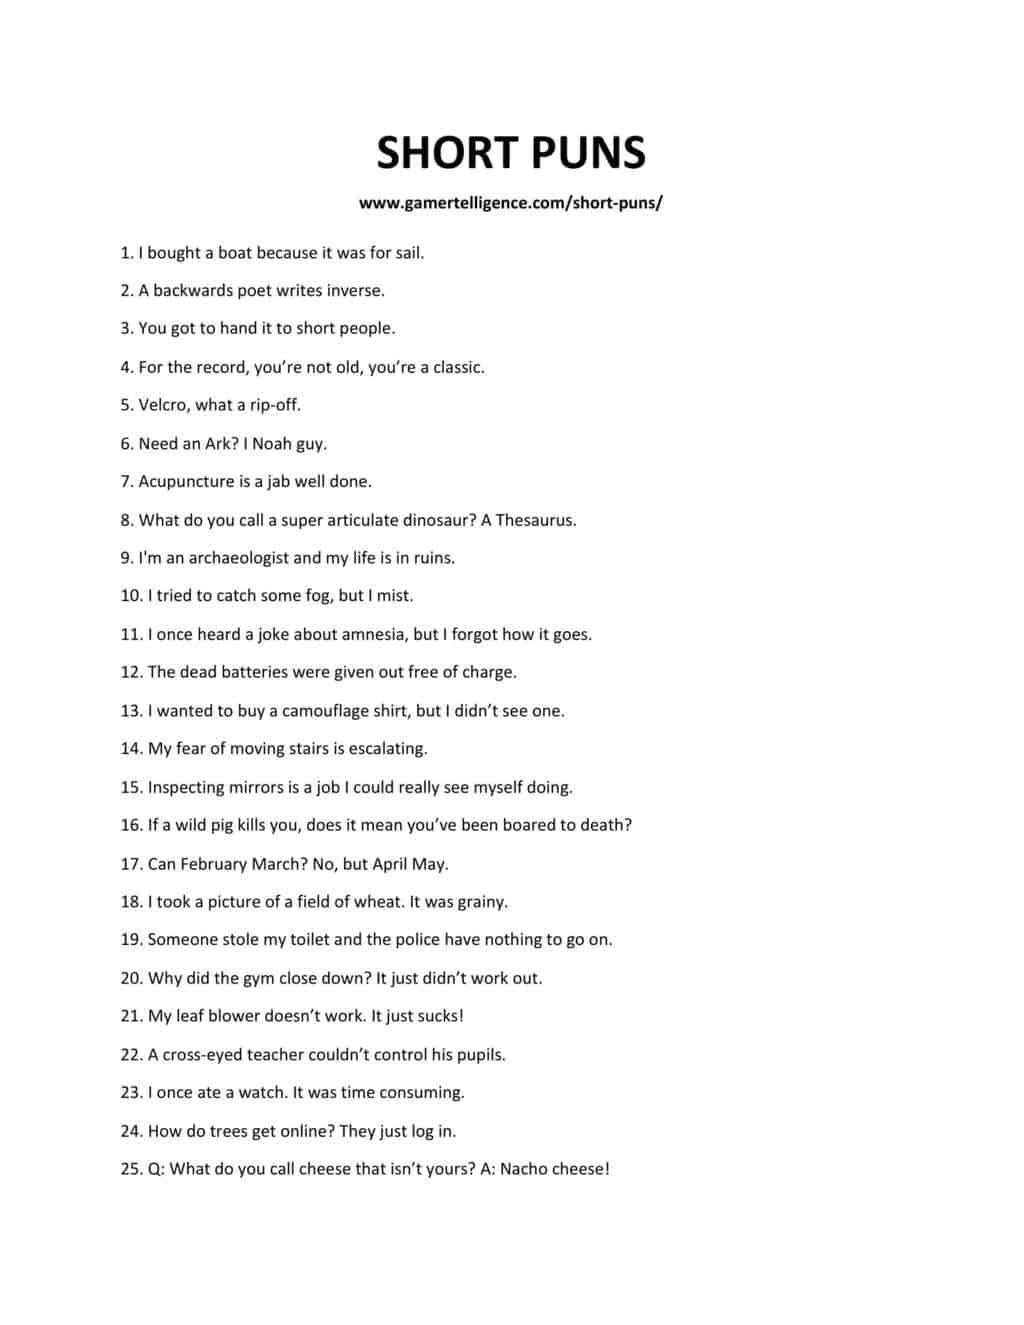 50 divertidos juegos de palabras cortos que definitivamente te convertirán en el alma de la fiesta